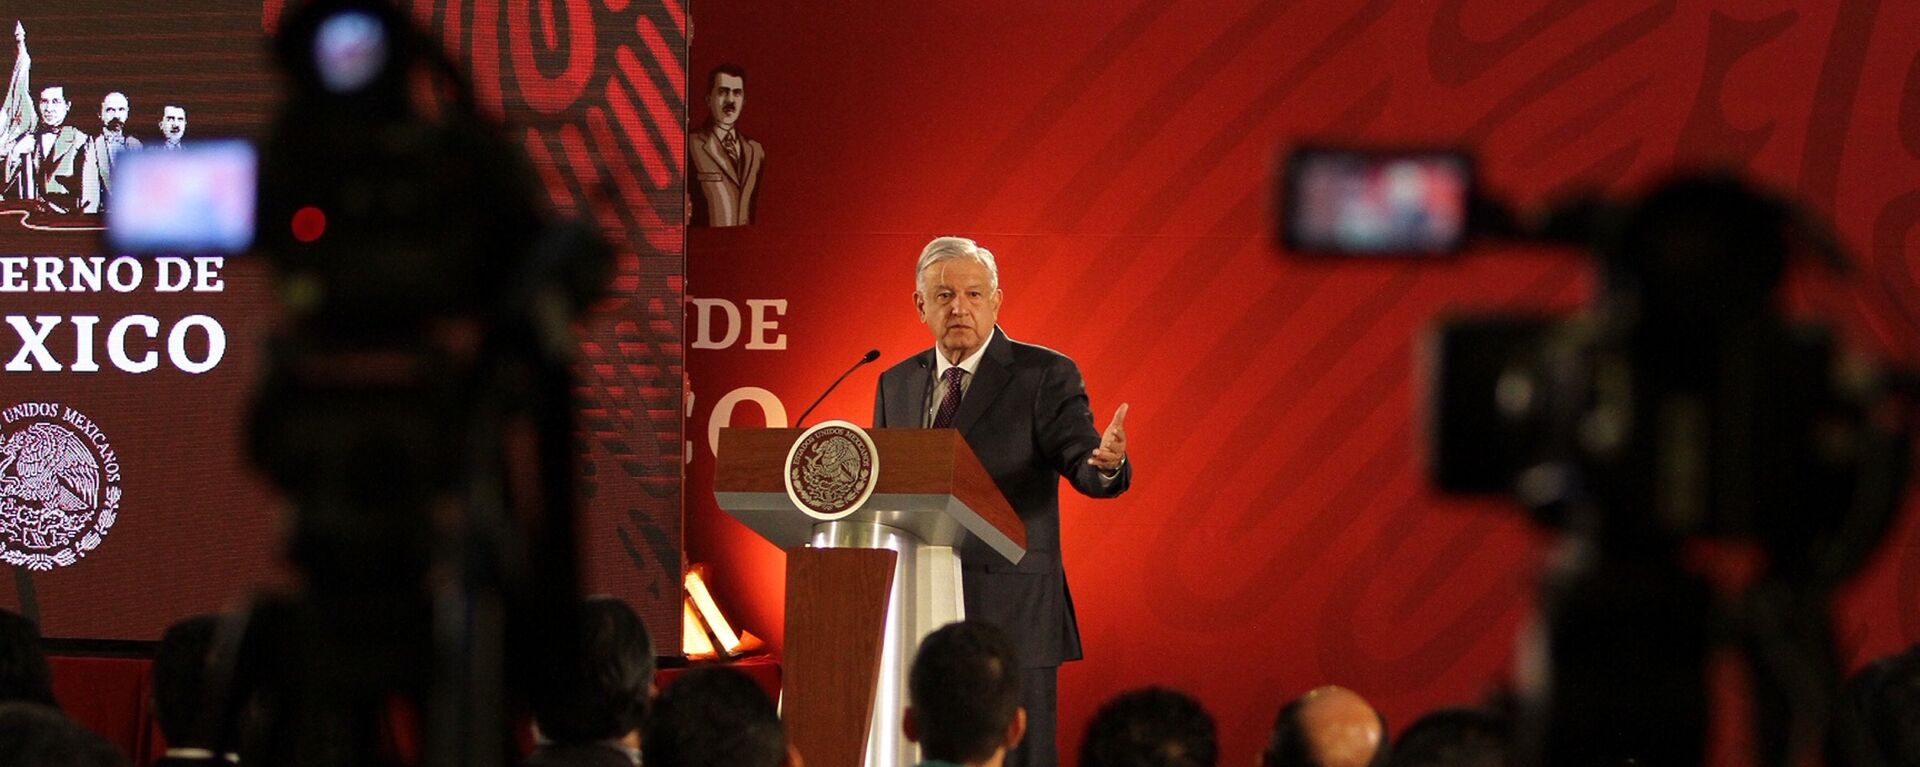 Andrés Manuel López Obrador, presidente de México - Sputnik Mundo, 1920, 11.01.2021